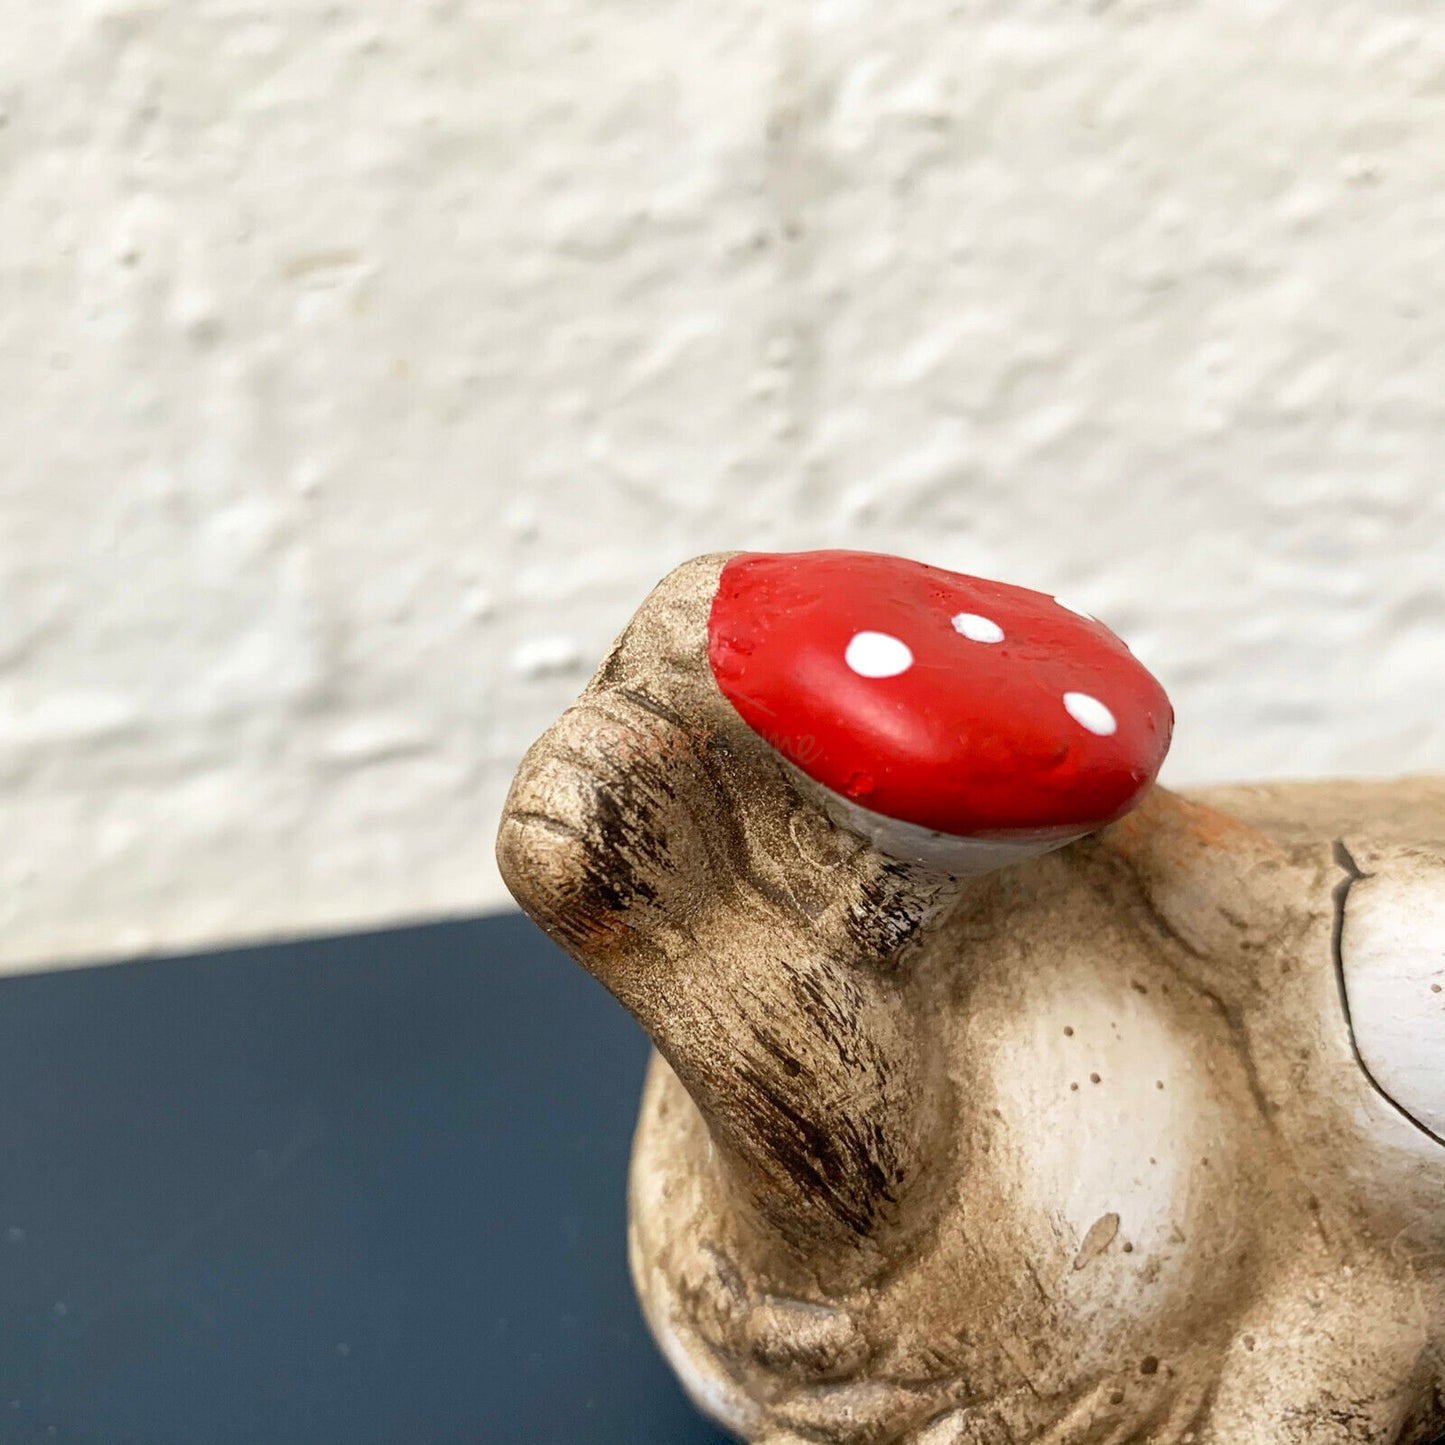 Set Of 2 Mini Hedgehog With Mushroom Figurines